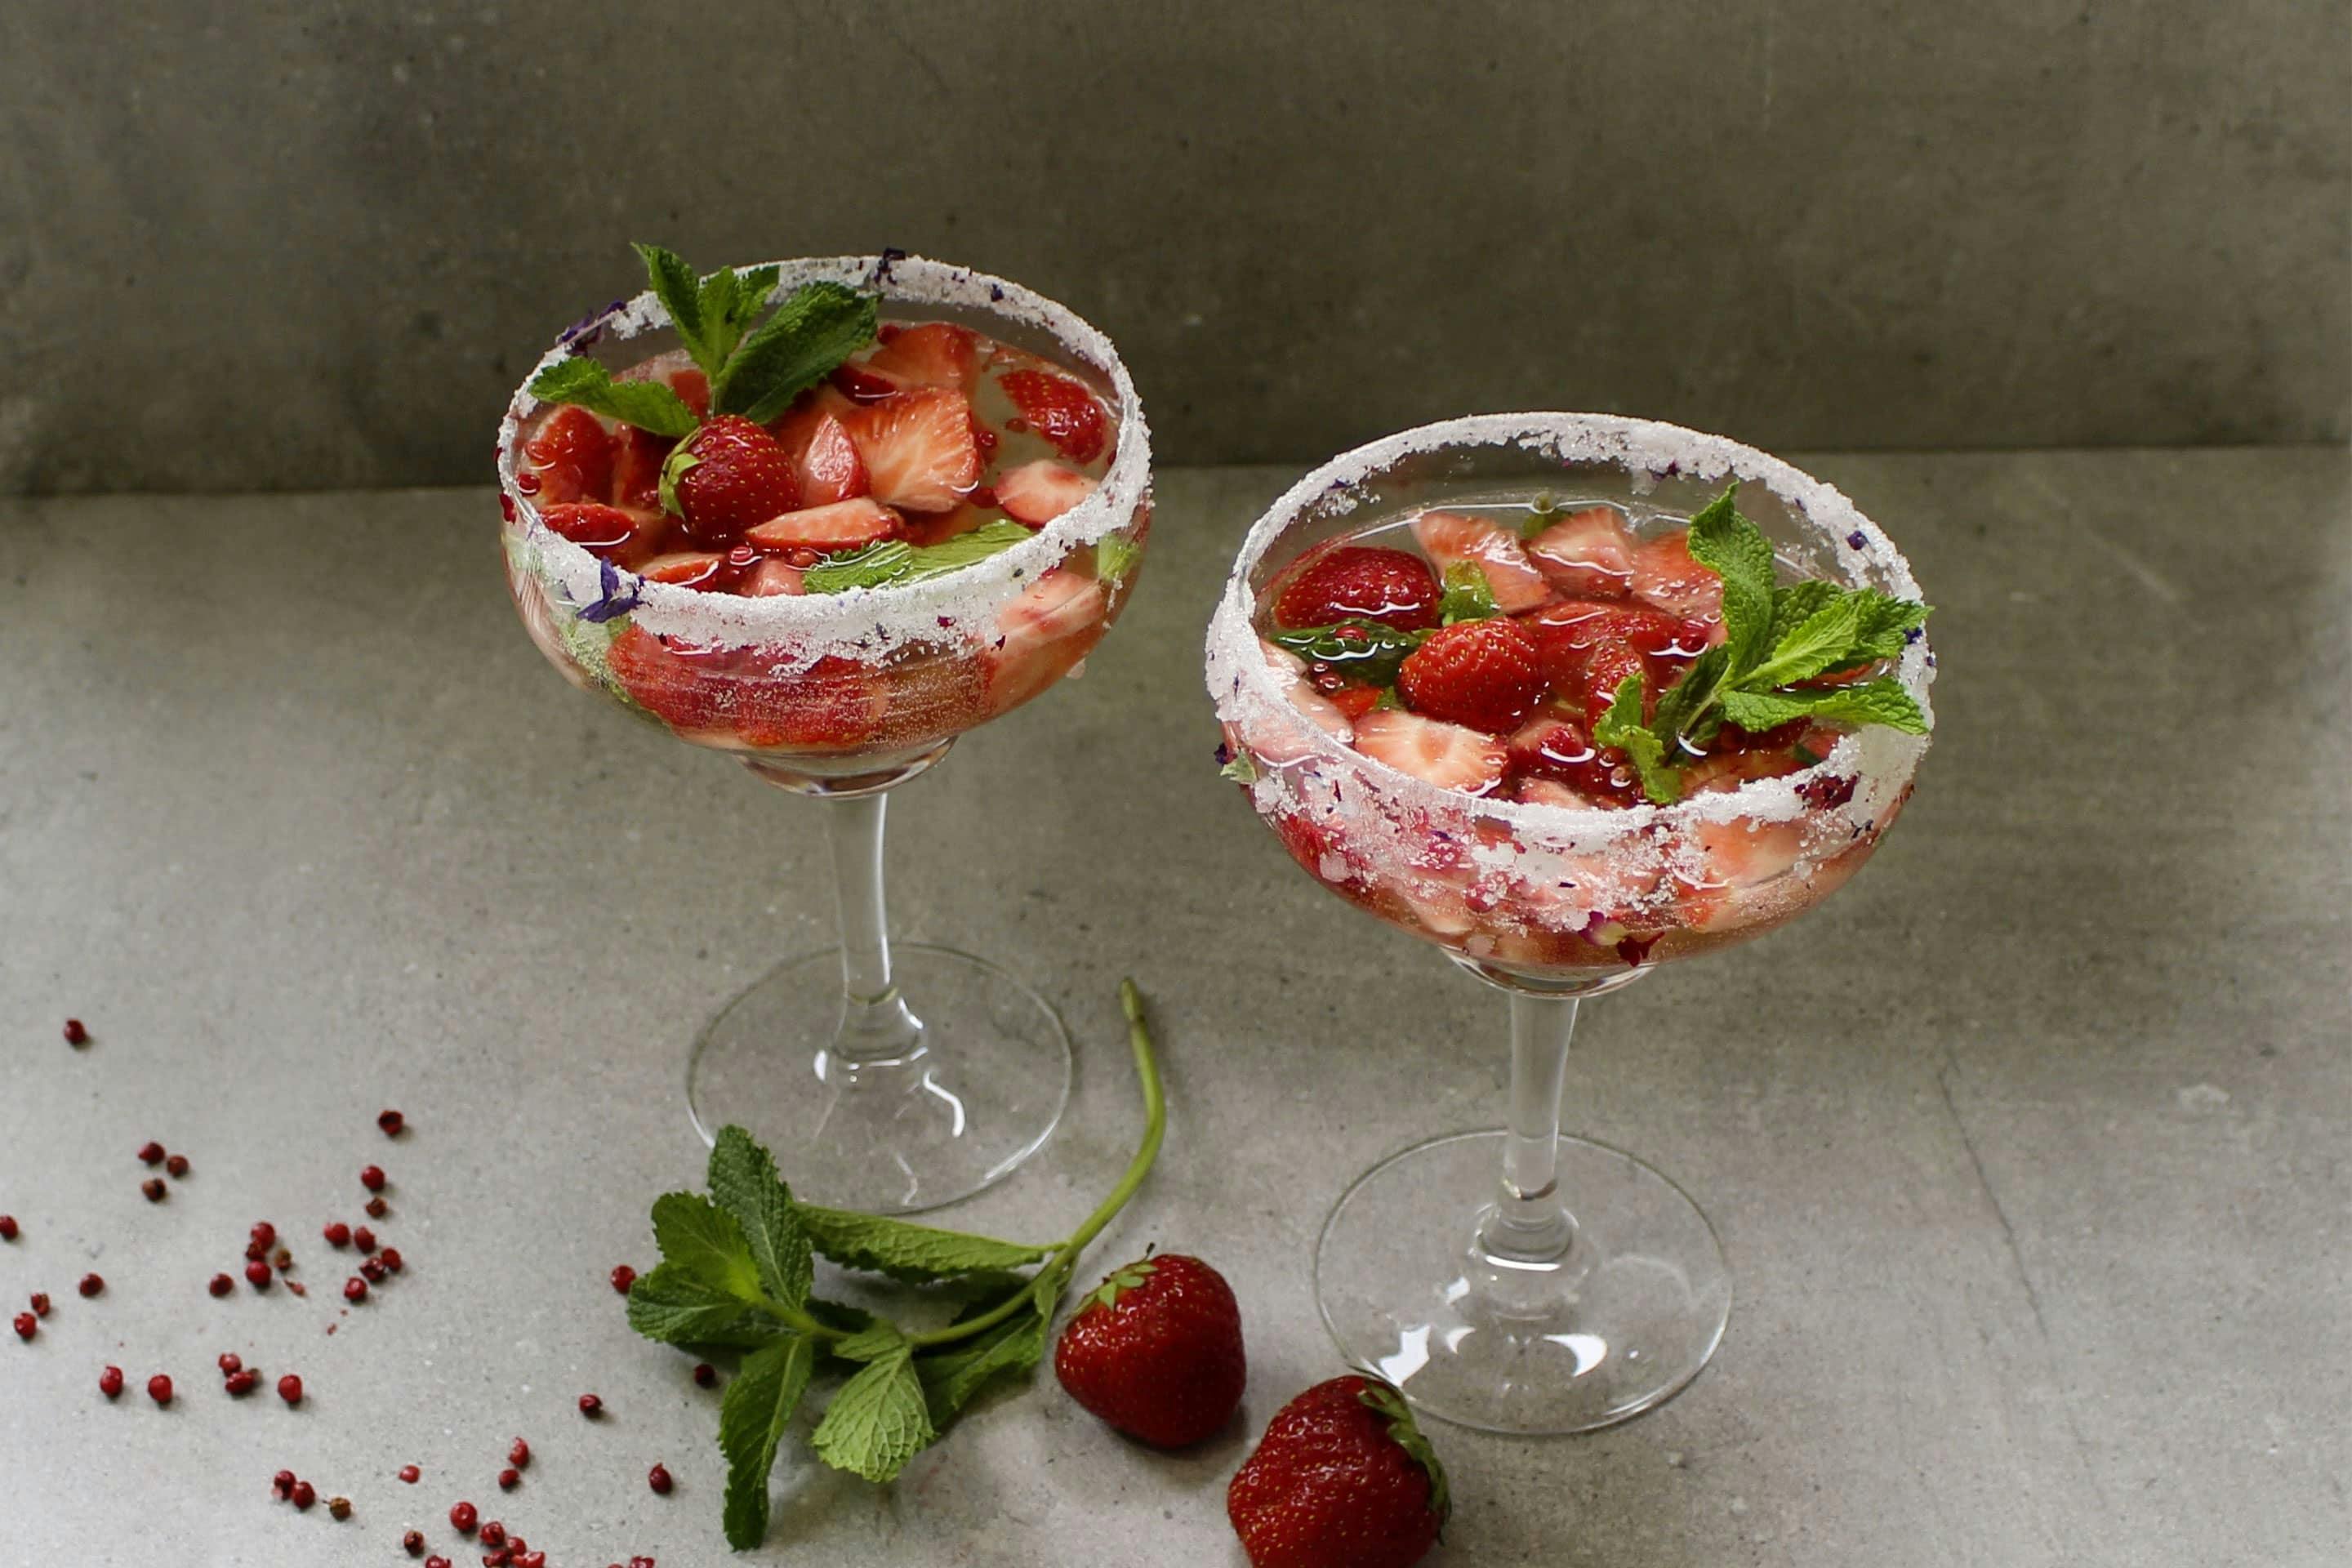 Sommer Bowle mit Rosa Beere und frischen Erdbeerstücken in gezuckerten Cocktailgläsern mit frischer Minze garniert